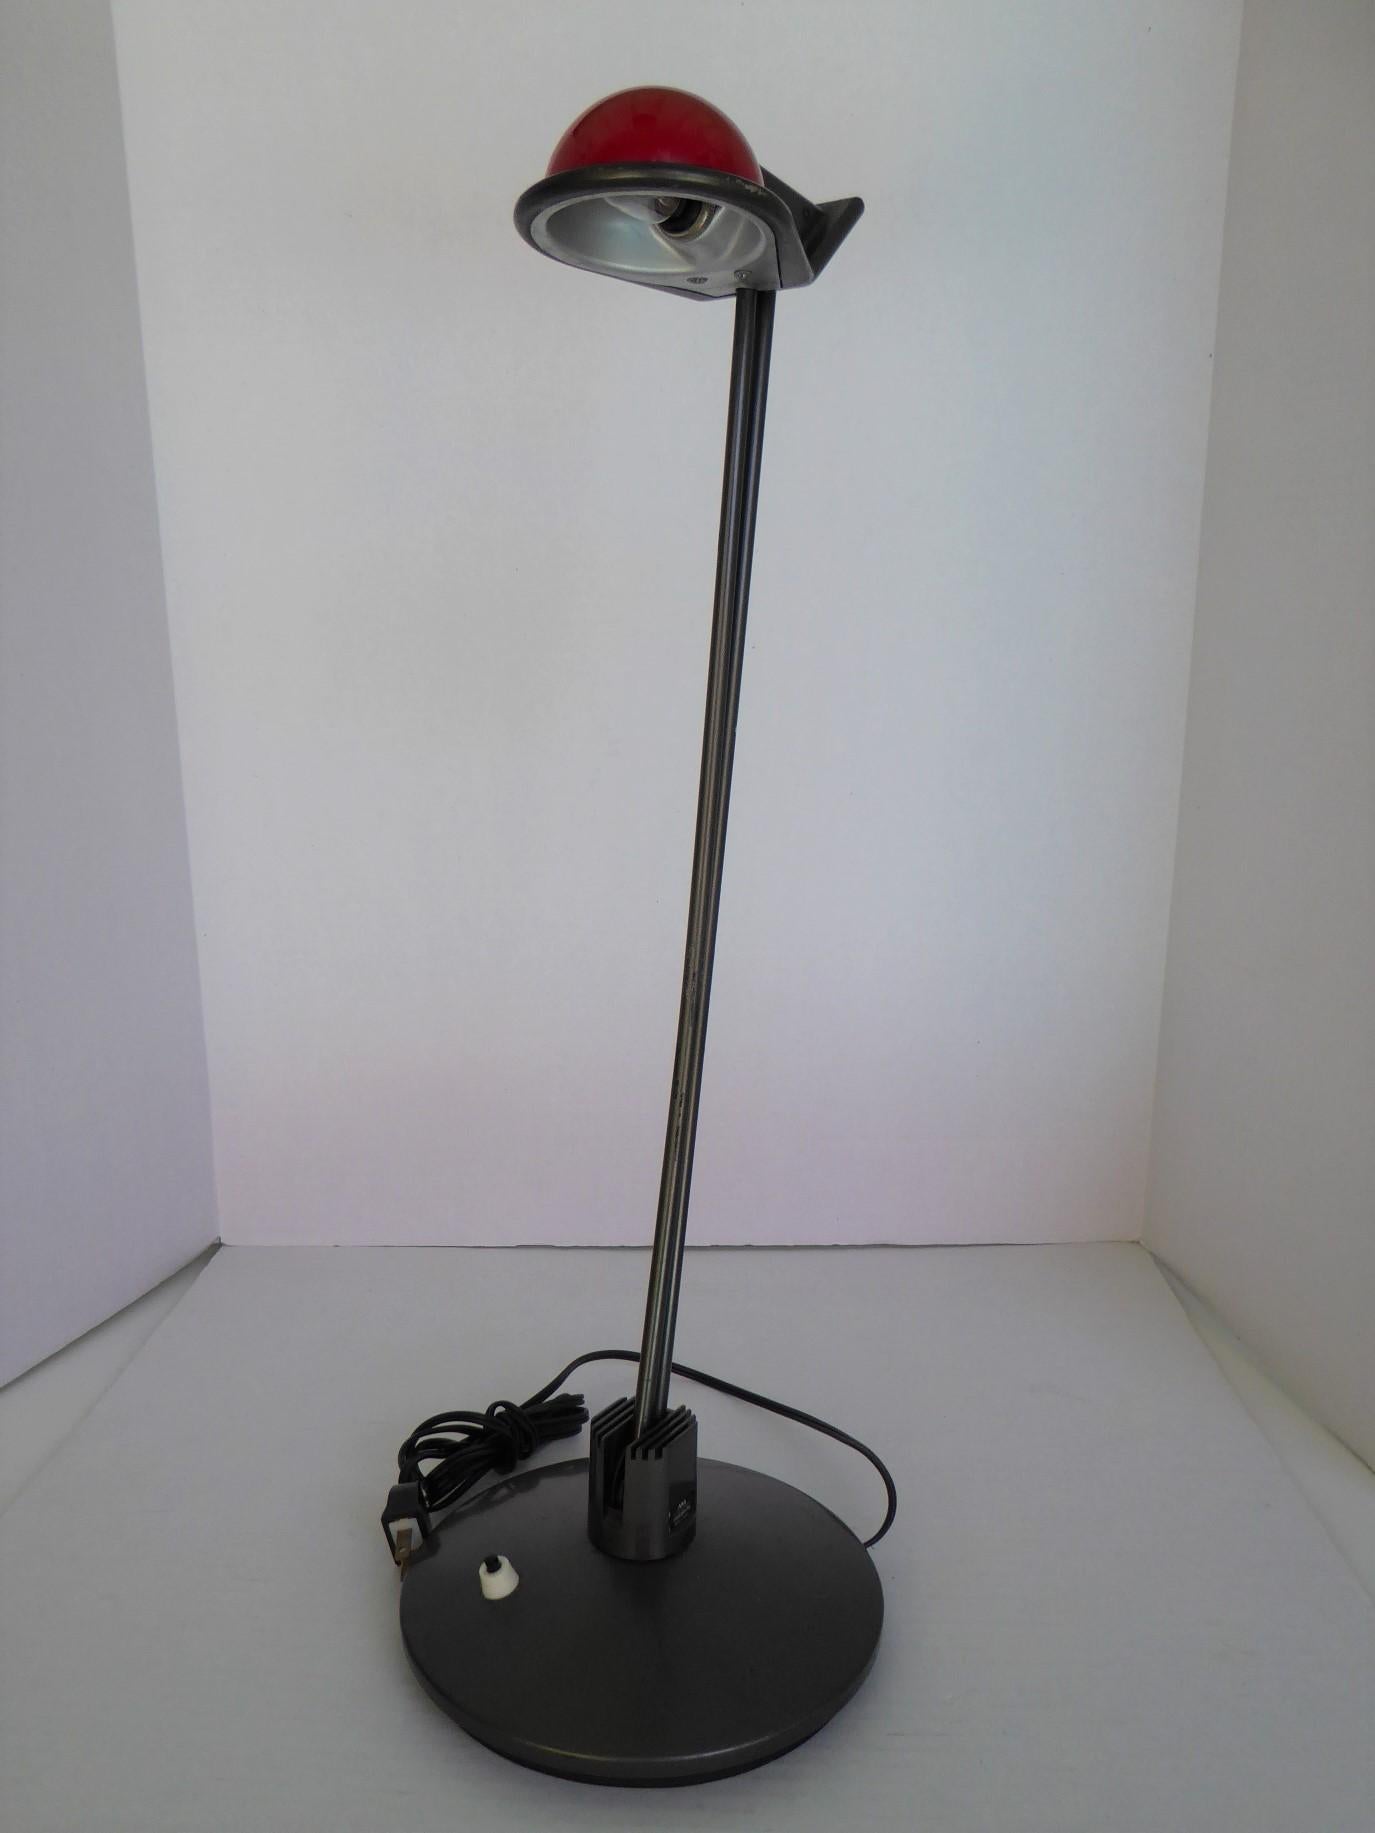 La lampe de bureau ÁNADE a été créée par le designer catalan Josep Lluscà en 1984 pour le fabricant espagnol de luminaires Metalarte qui l'a produite en 1985. Ce chevet / bureau  Le luminaire est composé d'une base circulaire en acier et d'un bras